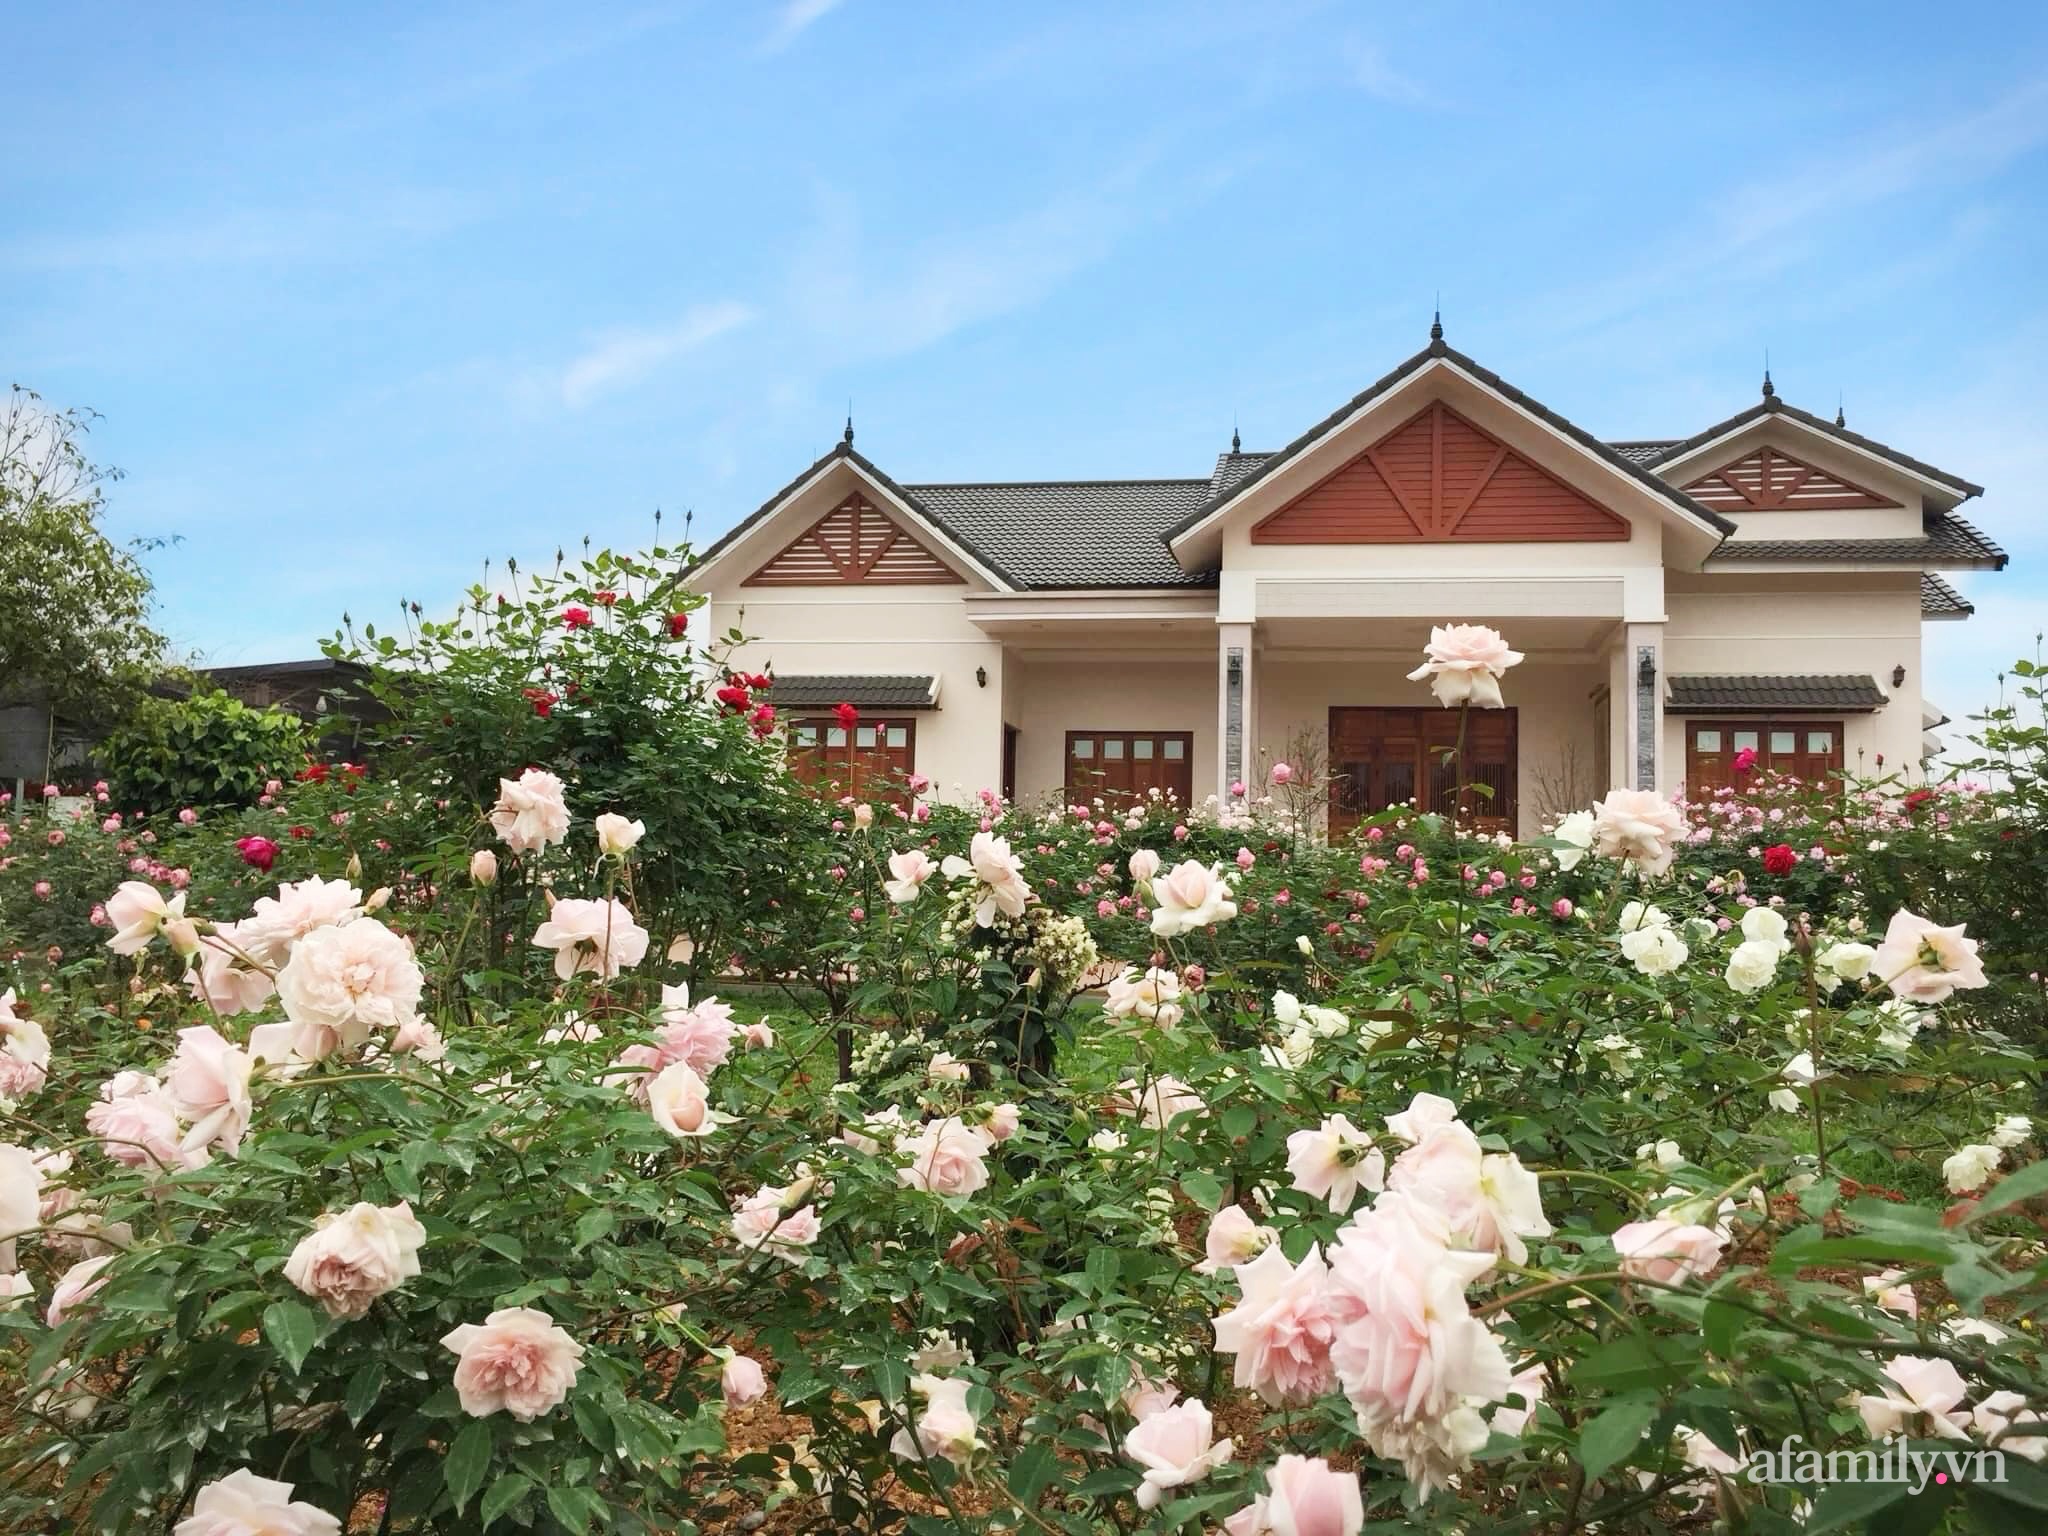 Cuộc sống an yên giữa đồi núi trong ngôi nhà hoa hồng quanh năm tỏa hương sắc của gia đình ở Ba Vì - Ảnh 1.